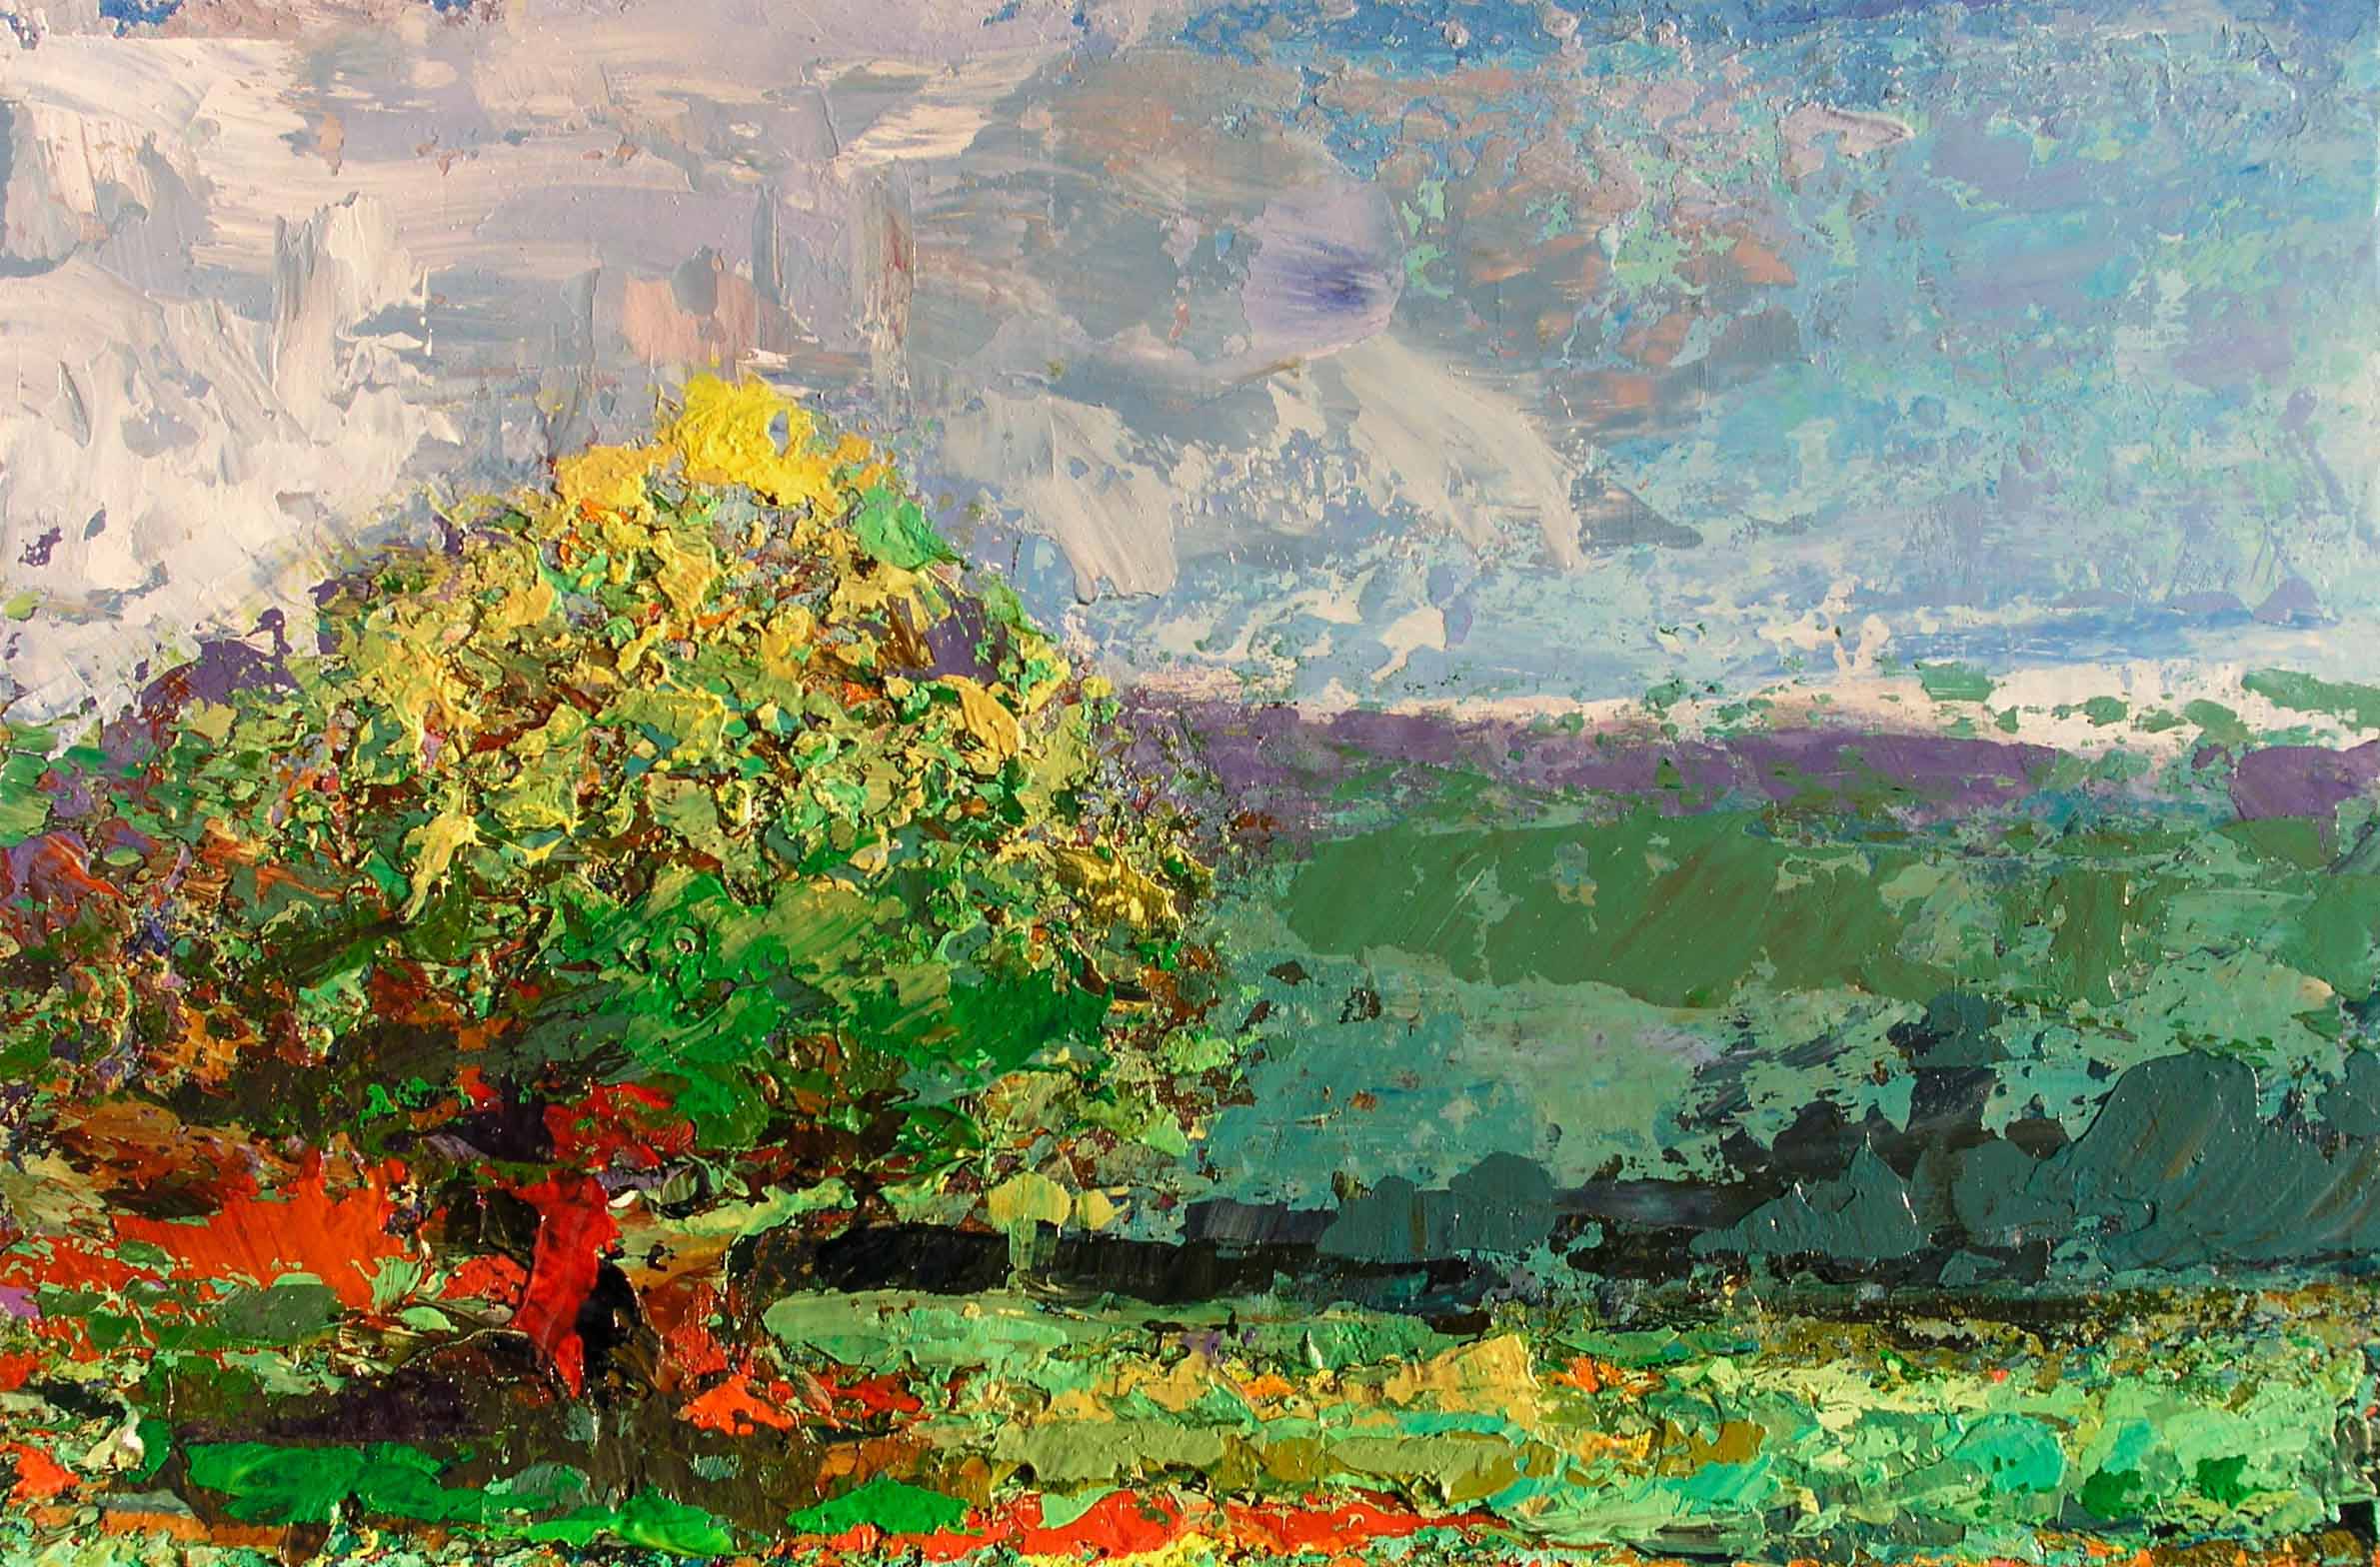 Nr. 2005-t22, Landschaft mit Baum, 2005, Acryl auf Holztafel, 70 x 105 cm